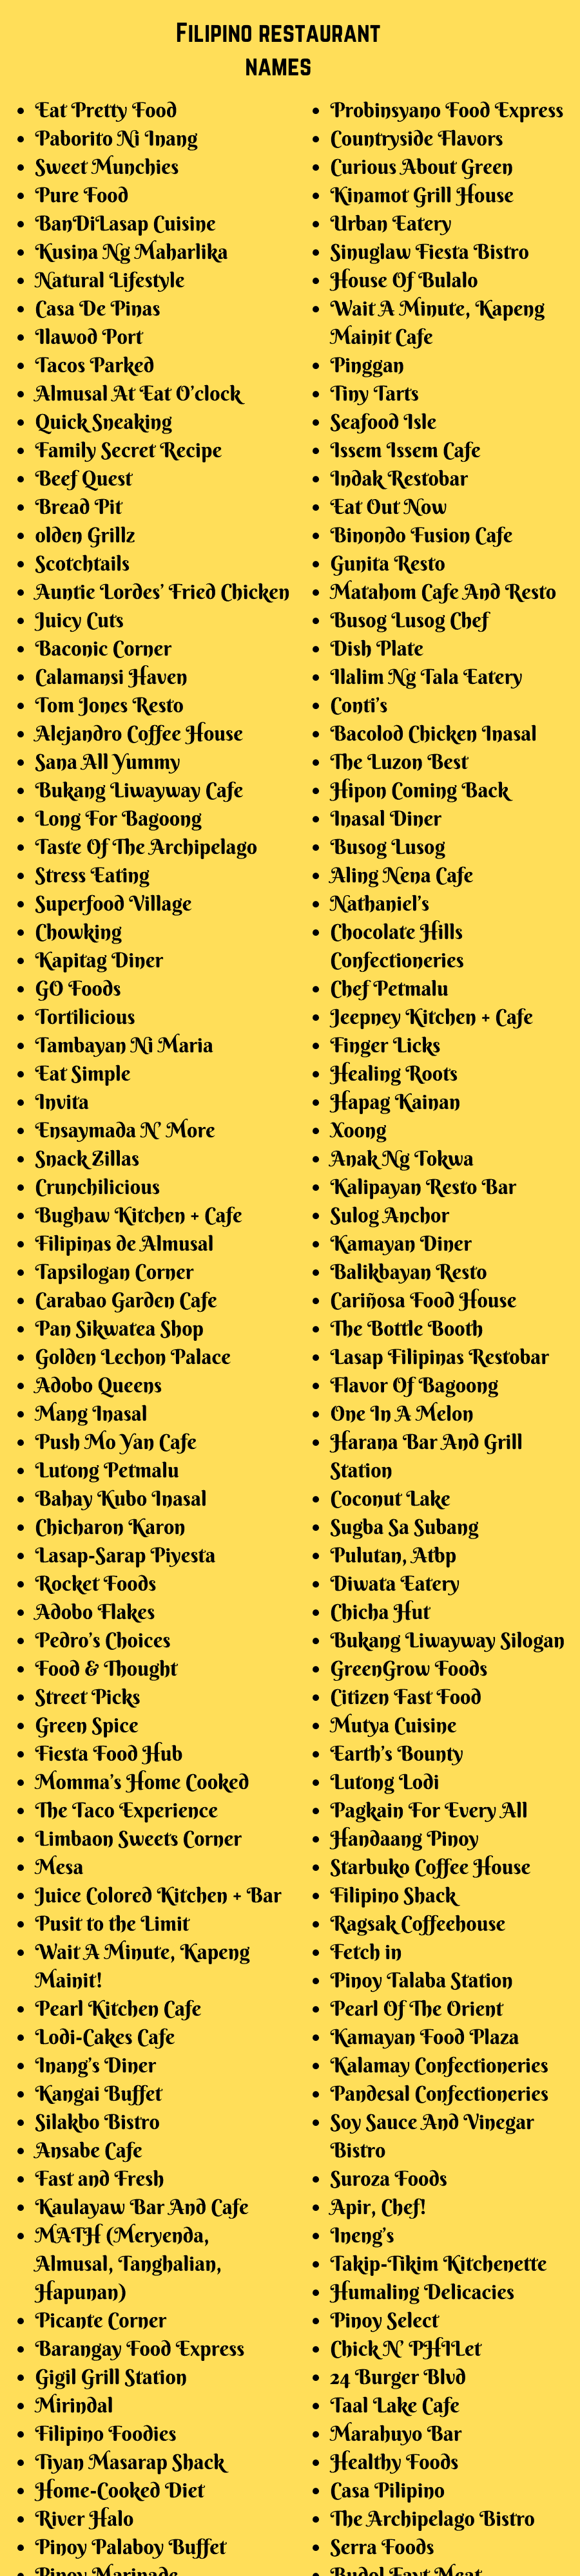 Filipino Restaurant Names